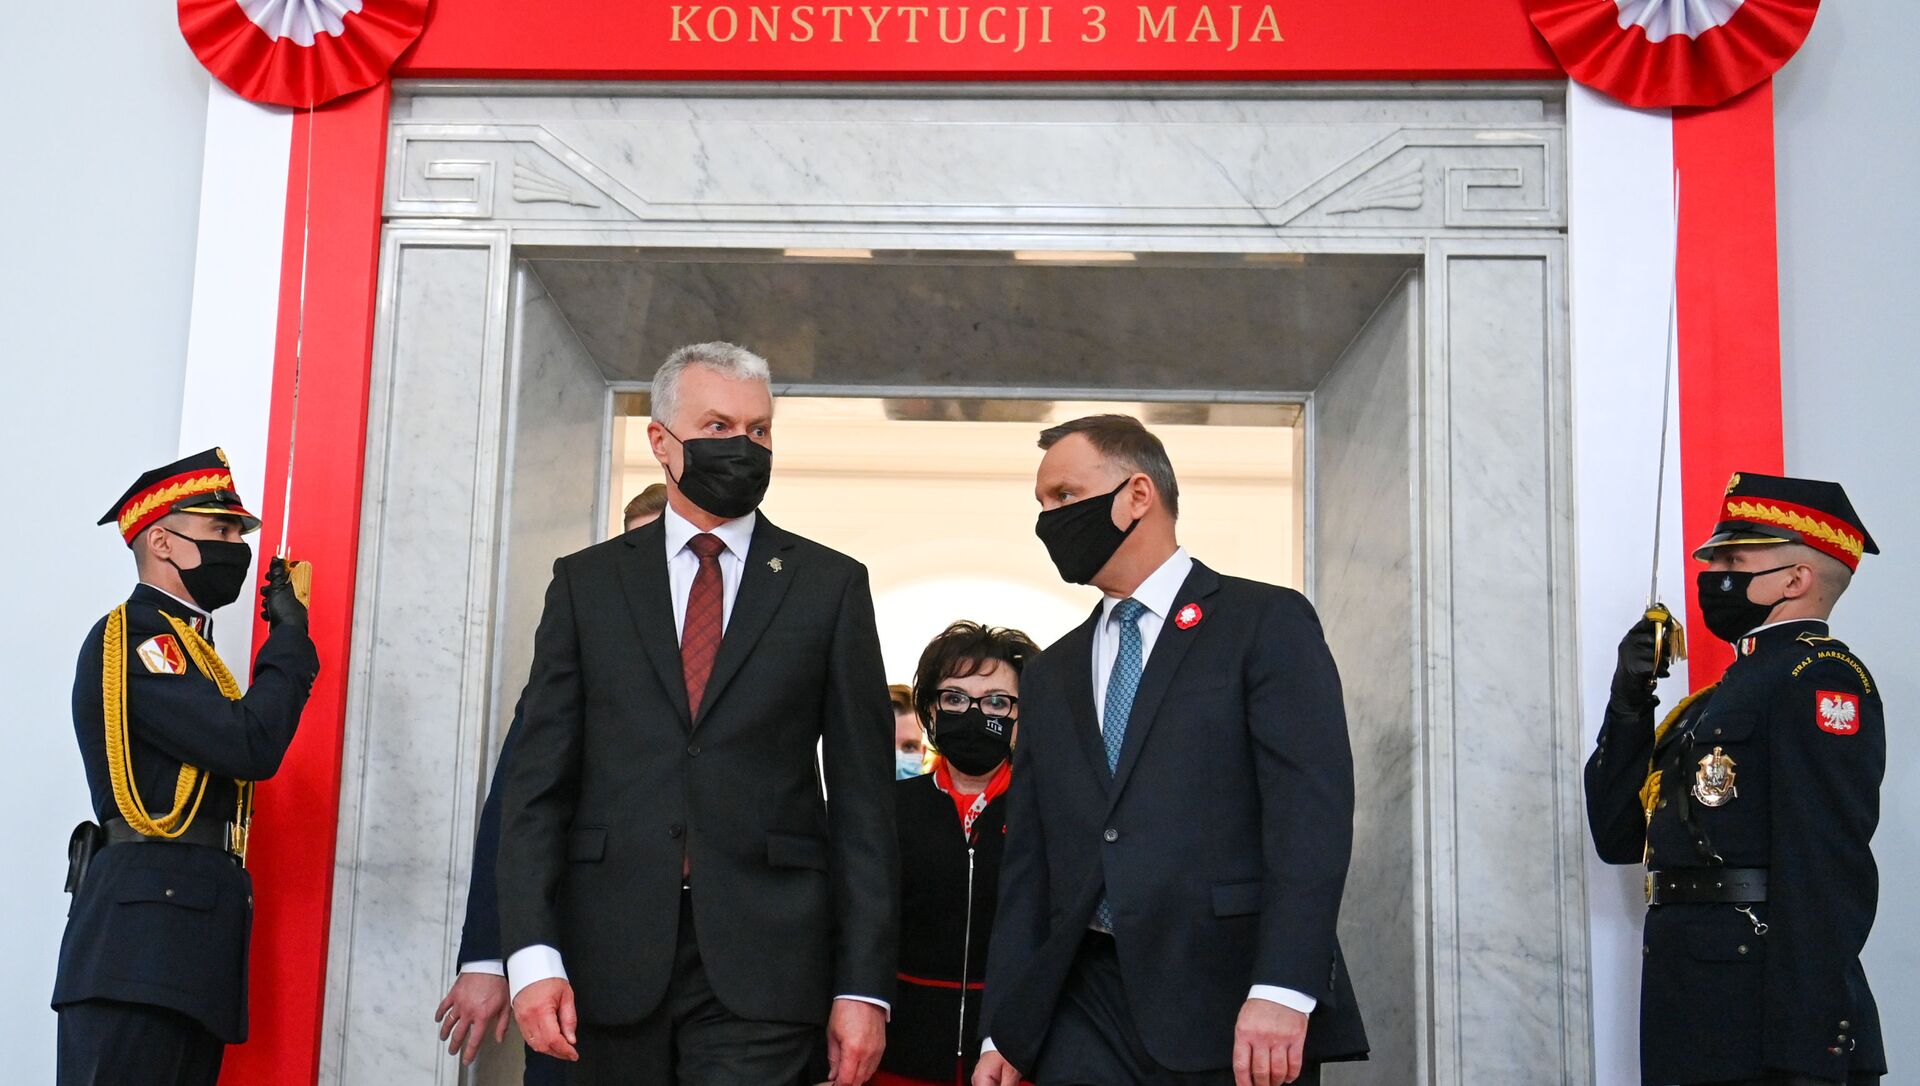 Президент Литвы Гитанас Науседа с президентом Польши Анджеем Дудой, 3 мая 2021 года - Sputnik Lietuva, 1920, 03.05.2021